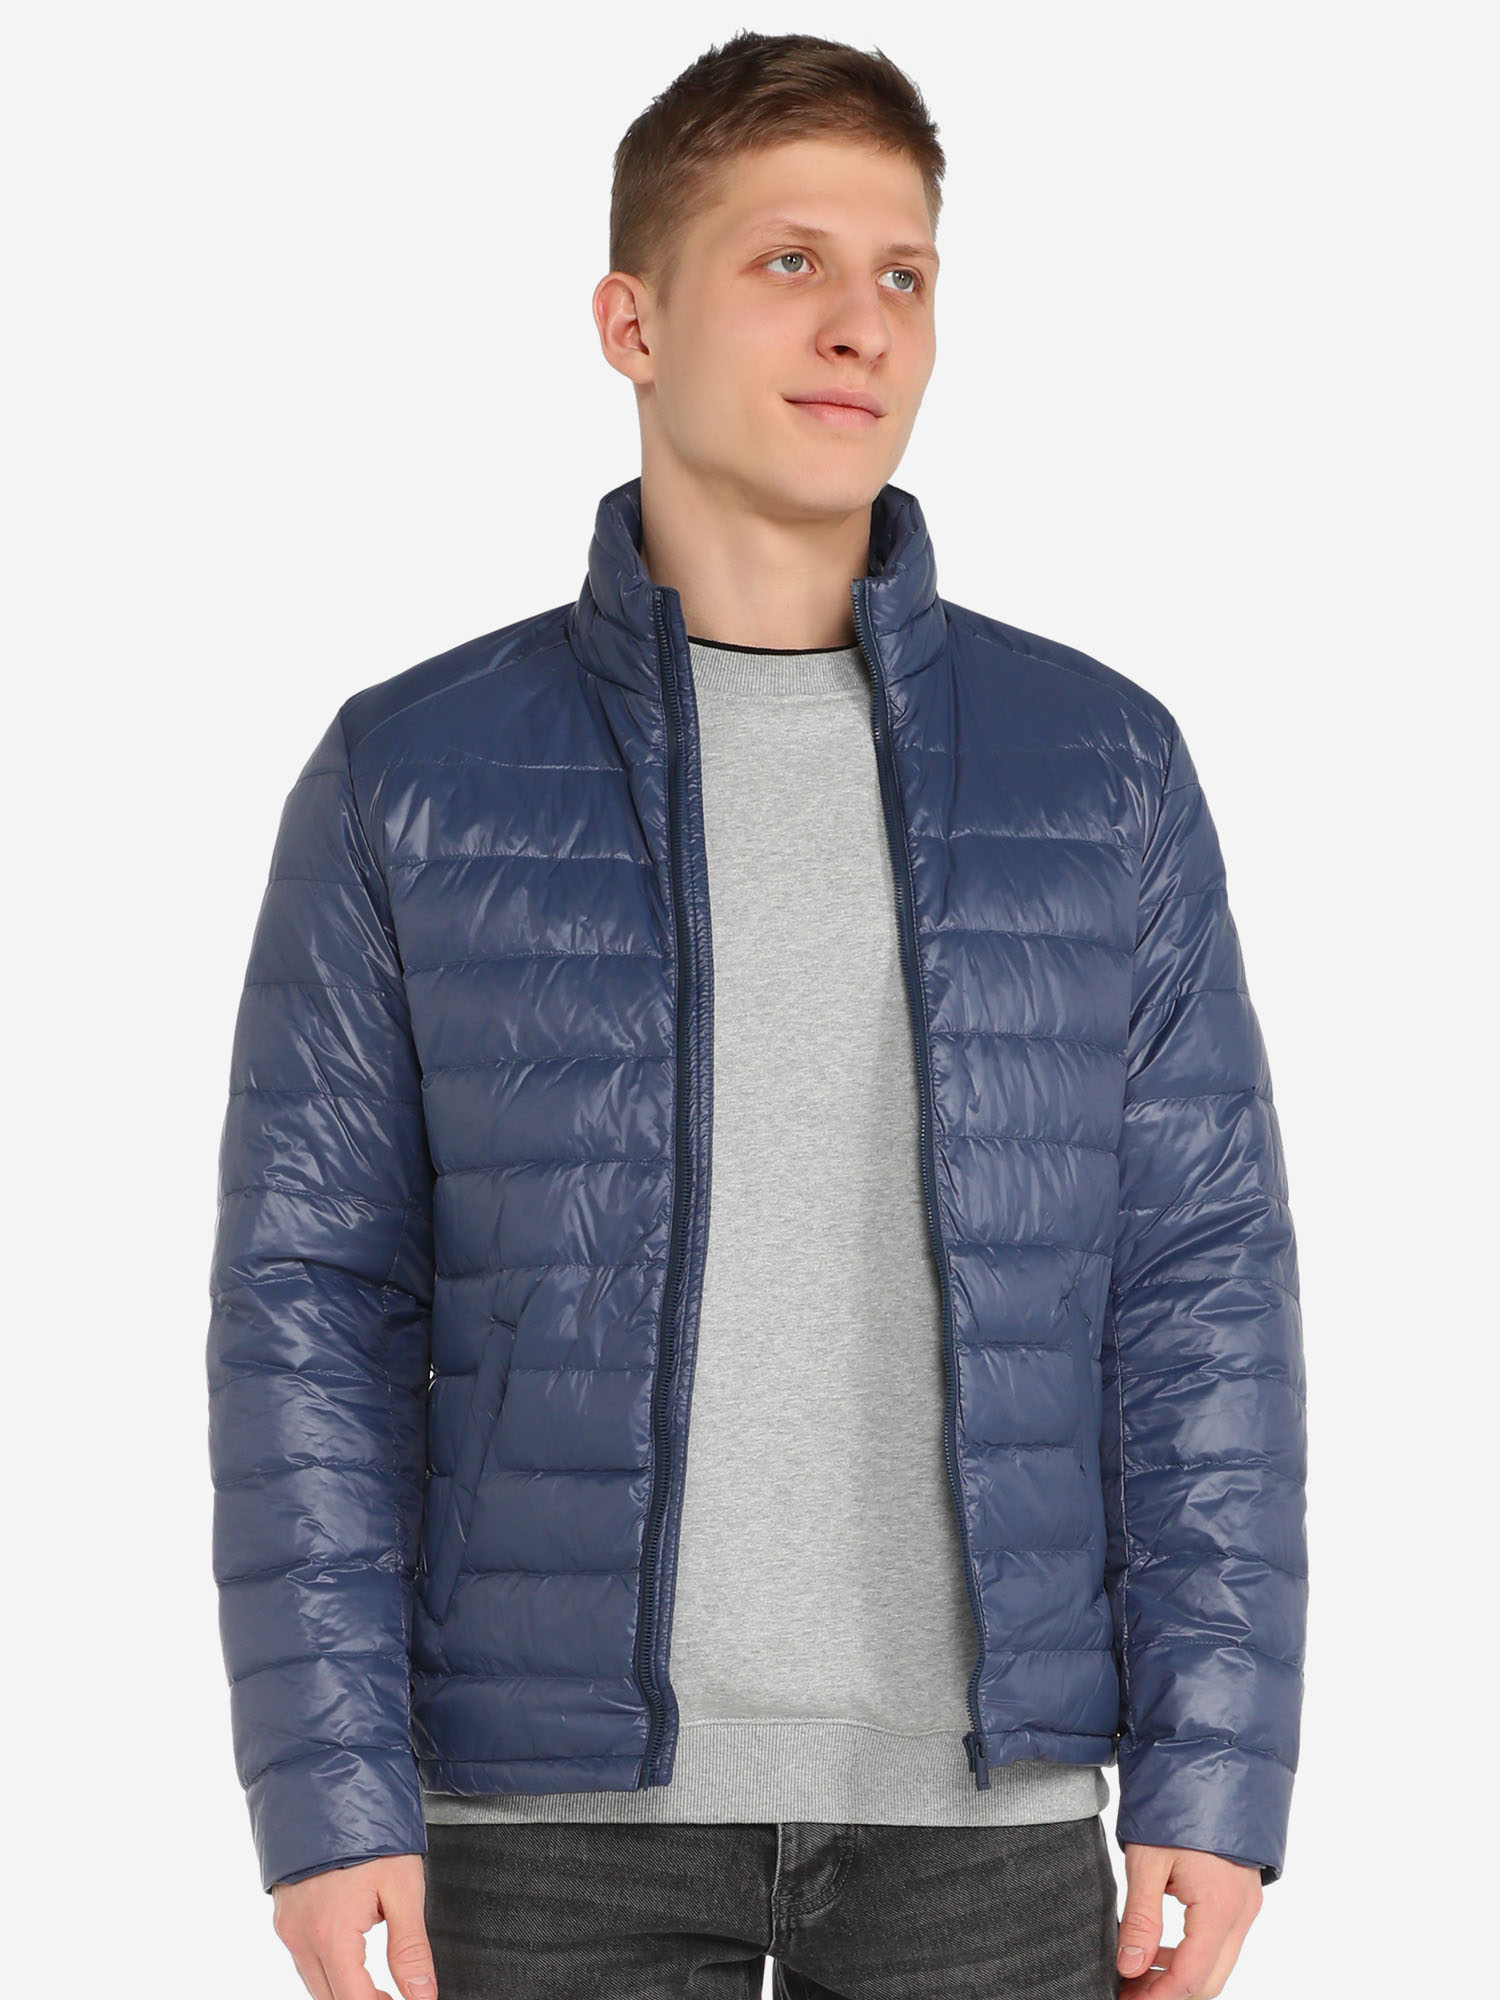 Мужская куртка пуховик MAISON DAVID (пух/перо), Синий куртка утепленная мужская toread белый